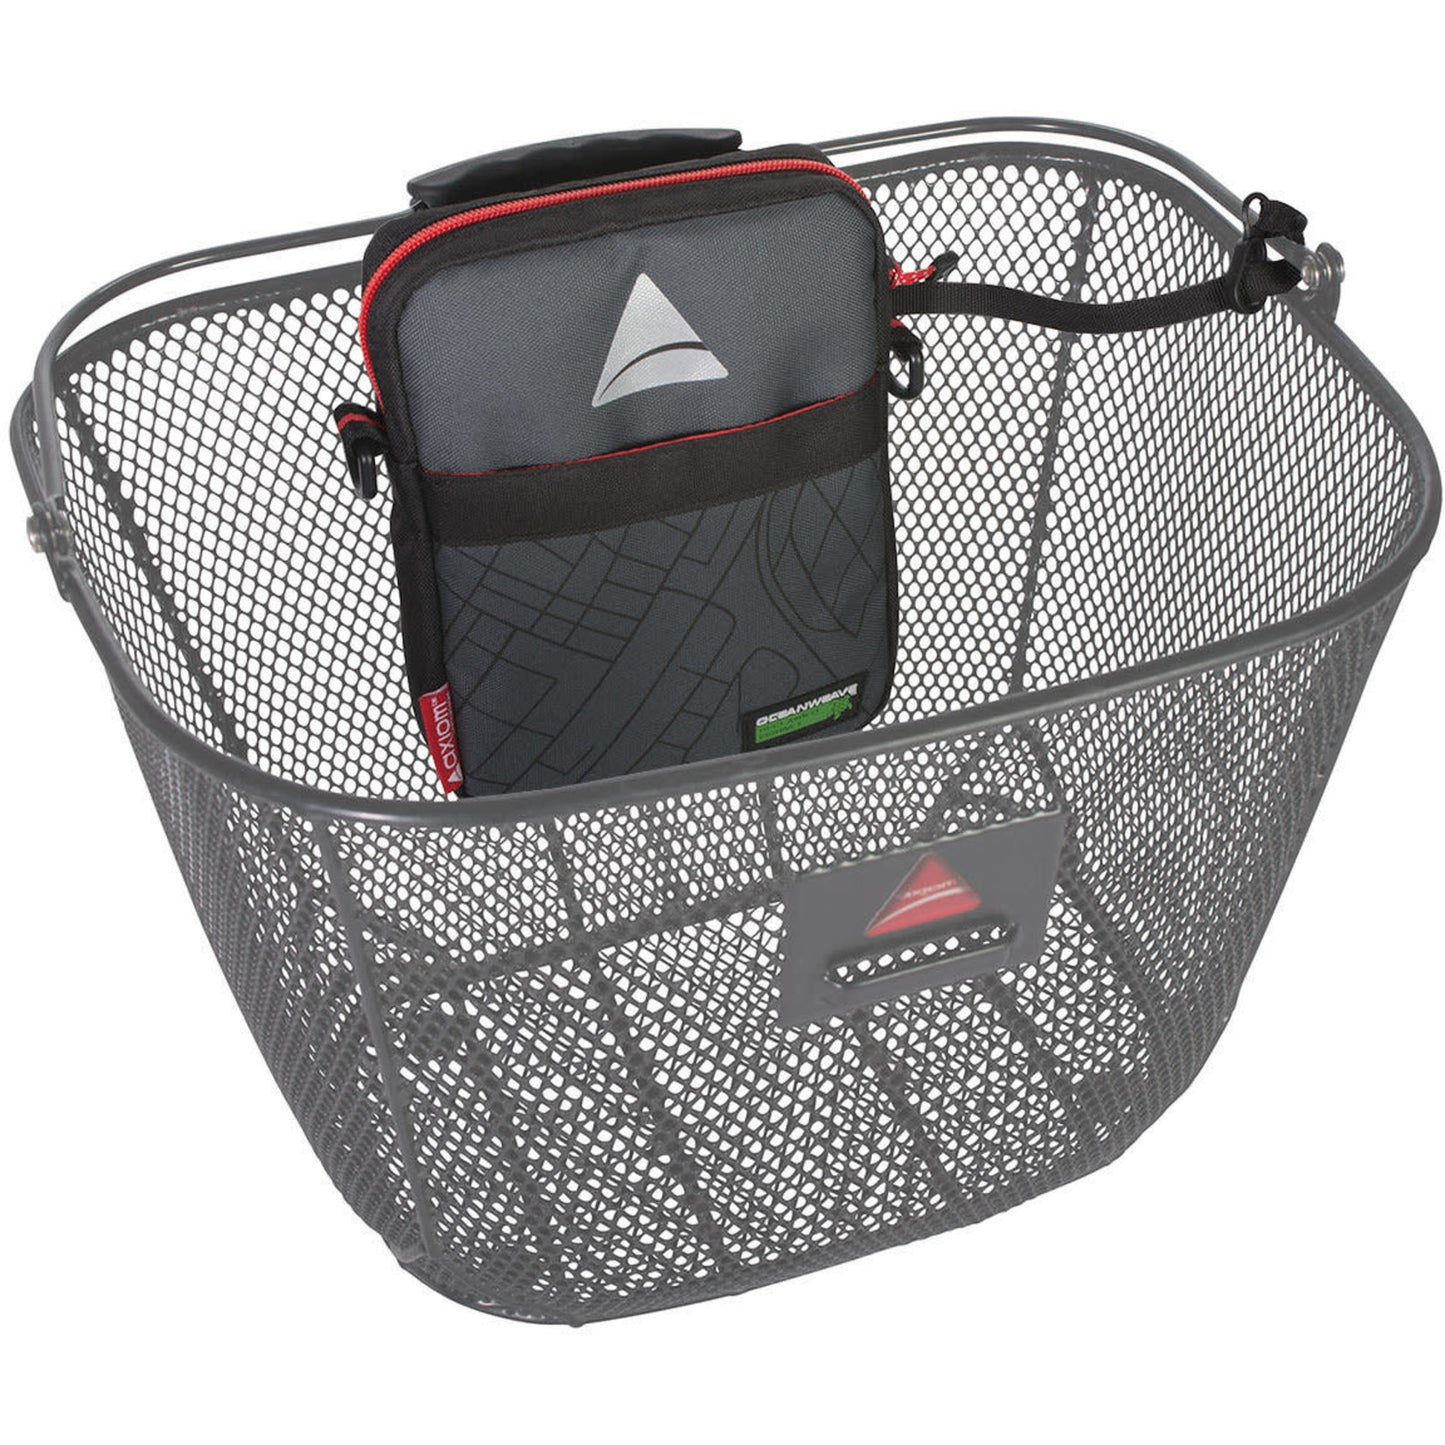 Seymour Oceanweave Basketpack